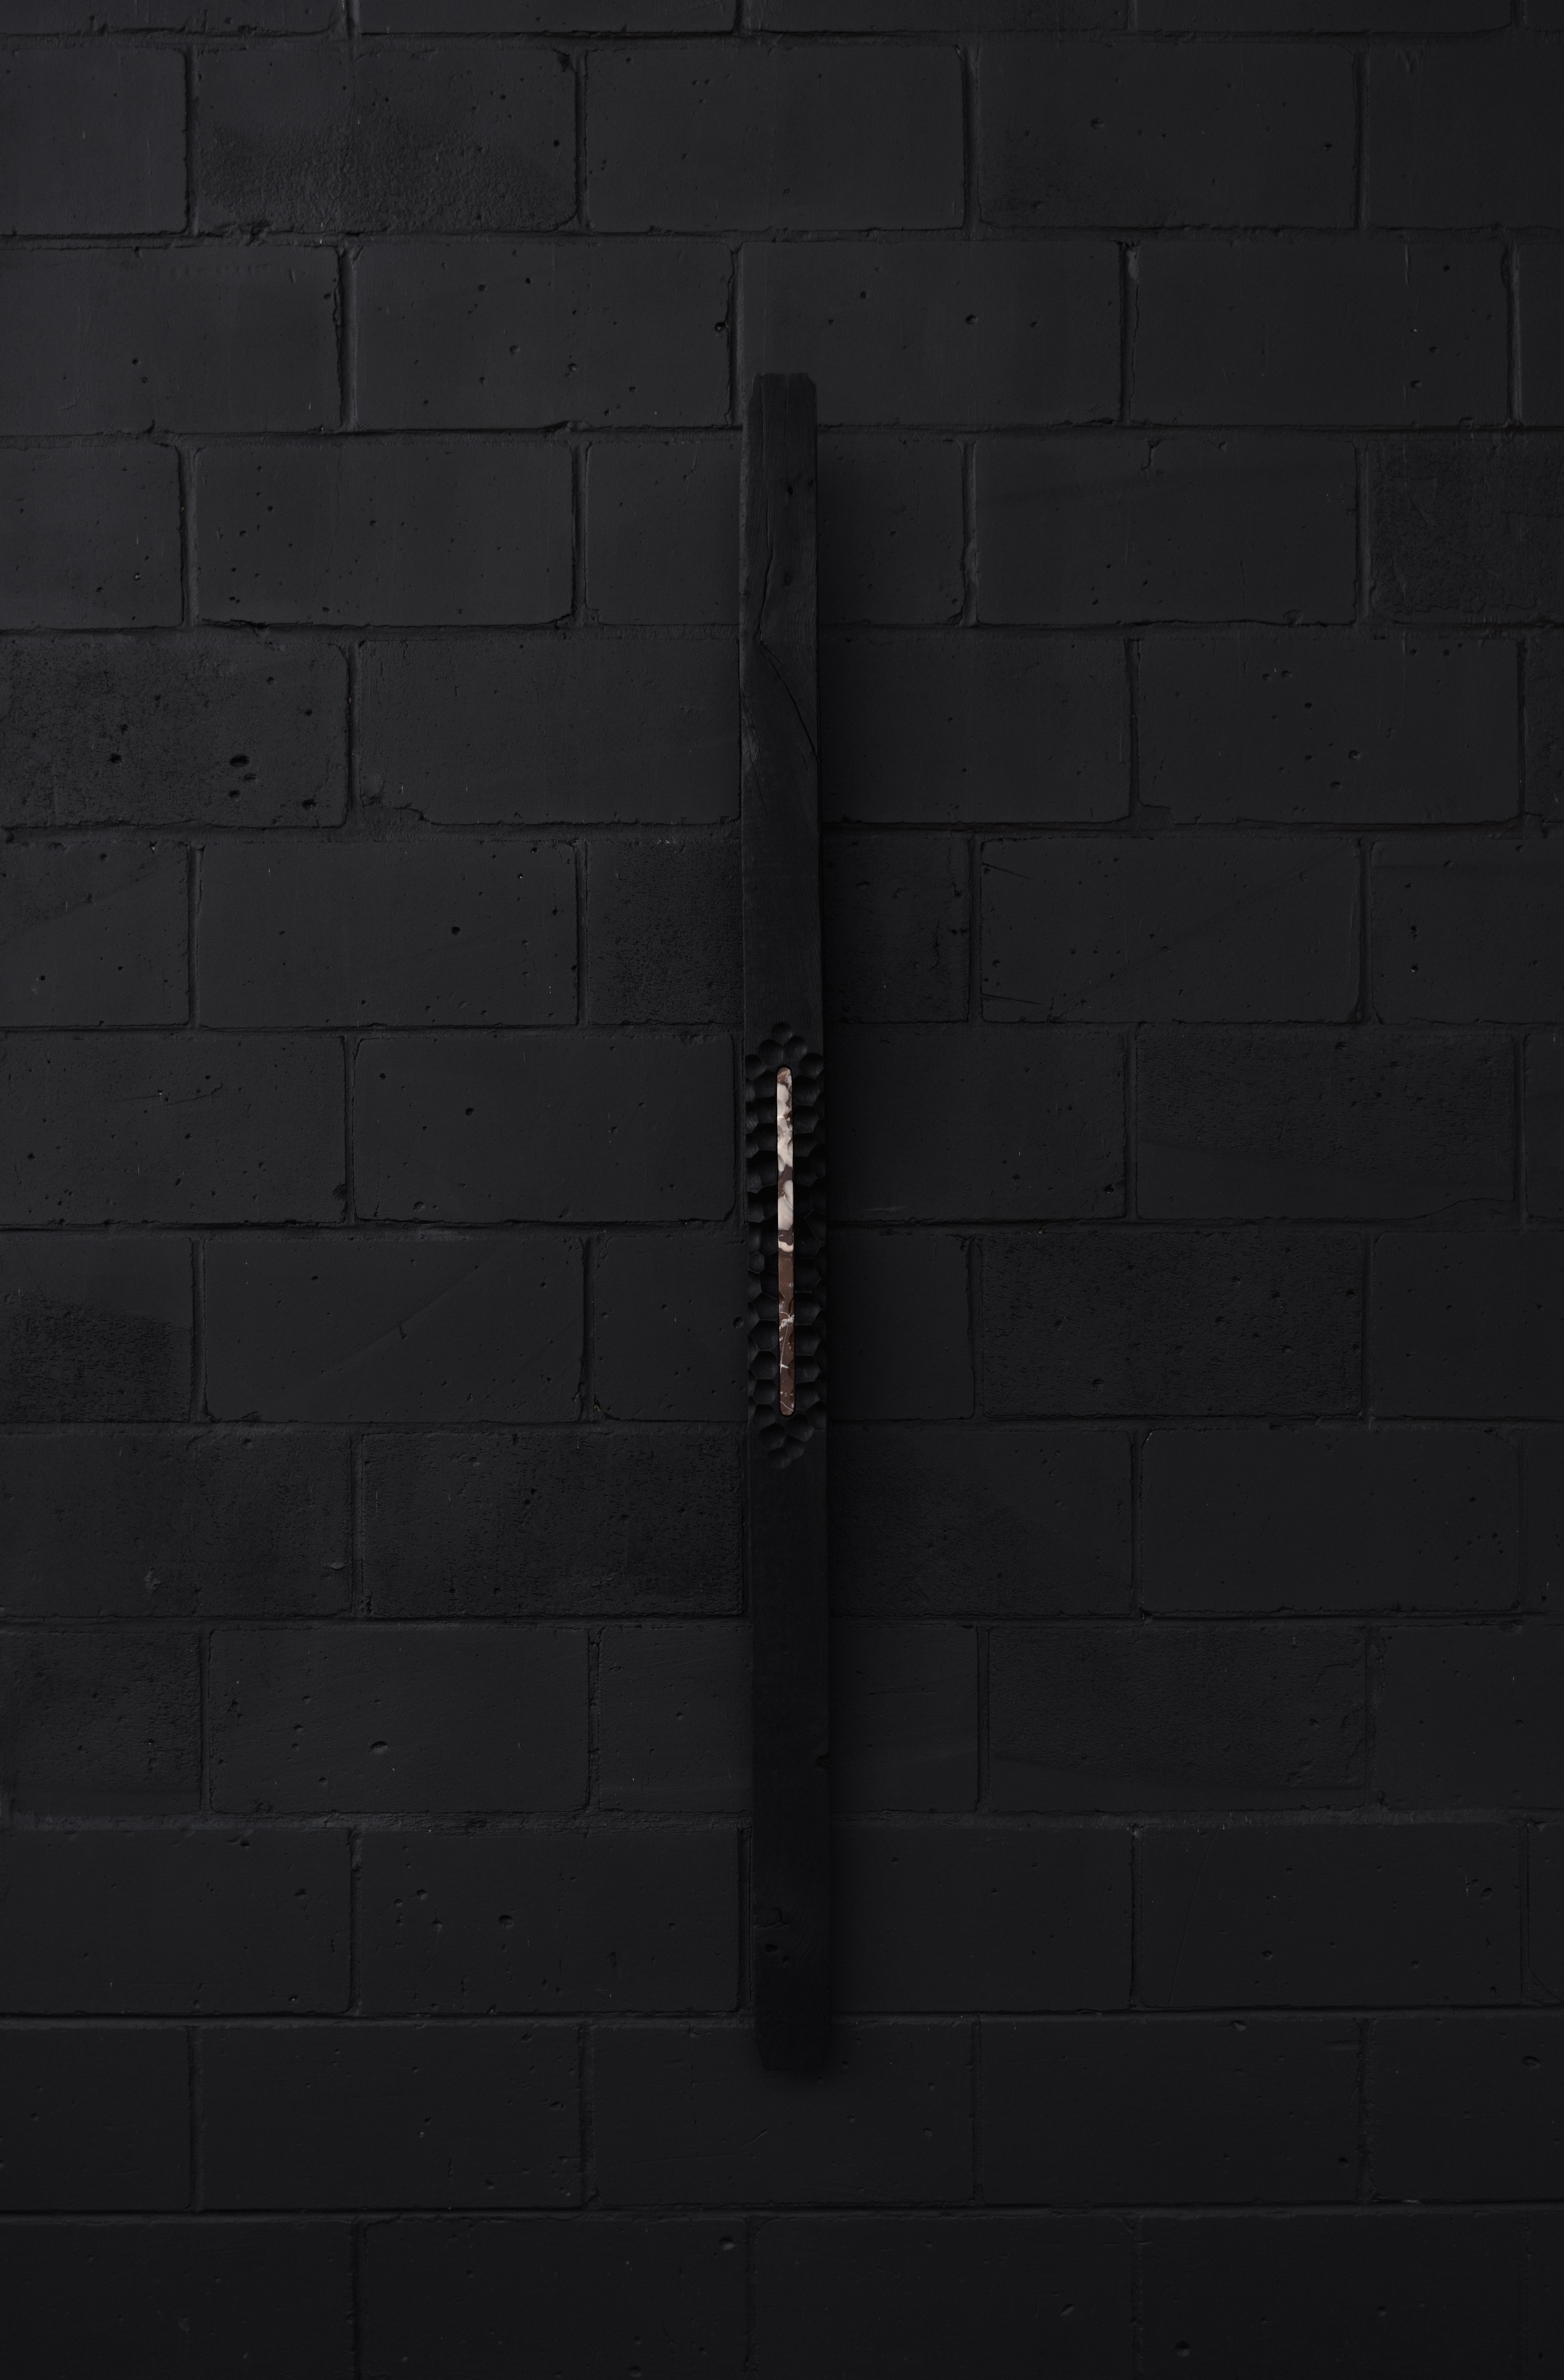 Erleben Sie 5 einzigartige Holzkohle-Wandskulpturen von Jeremy Descamps
Einzigartig
Abmessungen: B 12 x T 12 x H 220 cm
MATERIALIEN: Geflammte belgische Eiche, belgischer kirschroter Marmor.

Jeremy Descamps 
 Geboren in Namur, 7. Juli 1987
 Da er